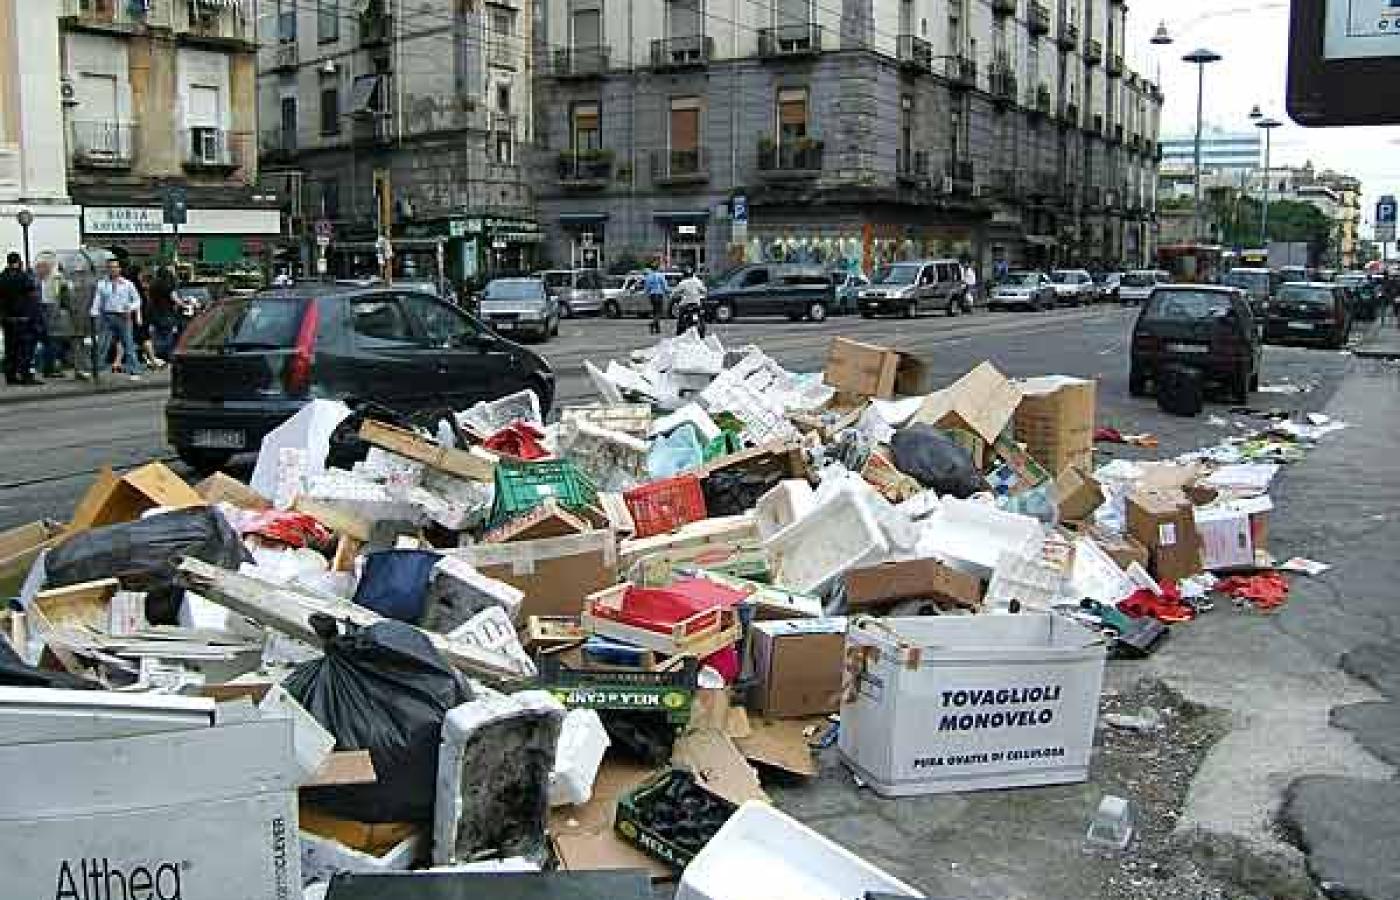 Od kilkunastu lat stan odpadów w Neapolu gnębi cały region Kampanii. Fot. LHOON, Flickr, CC by SA